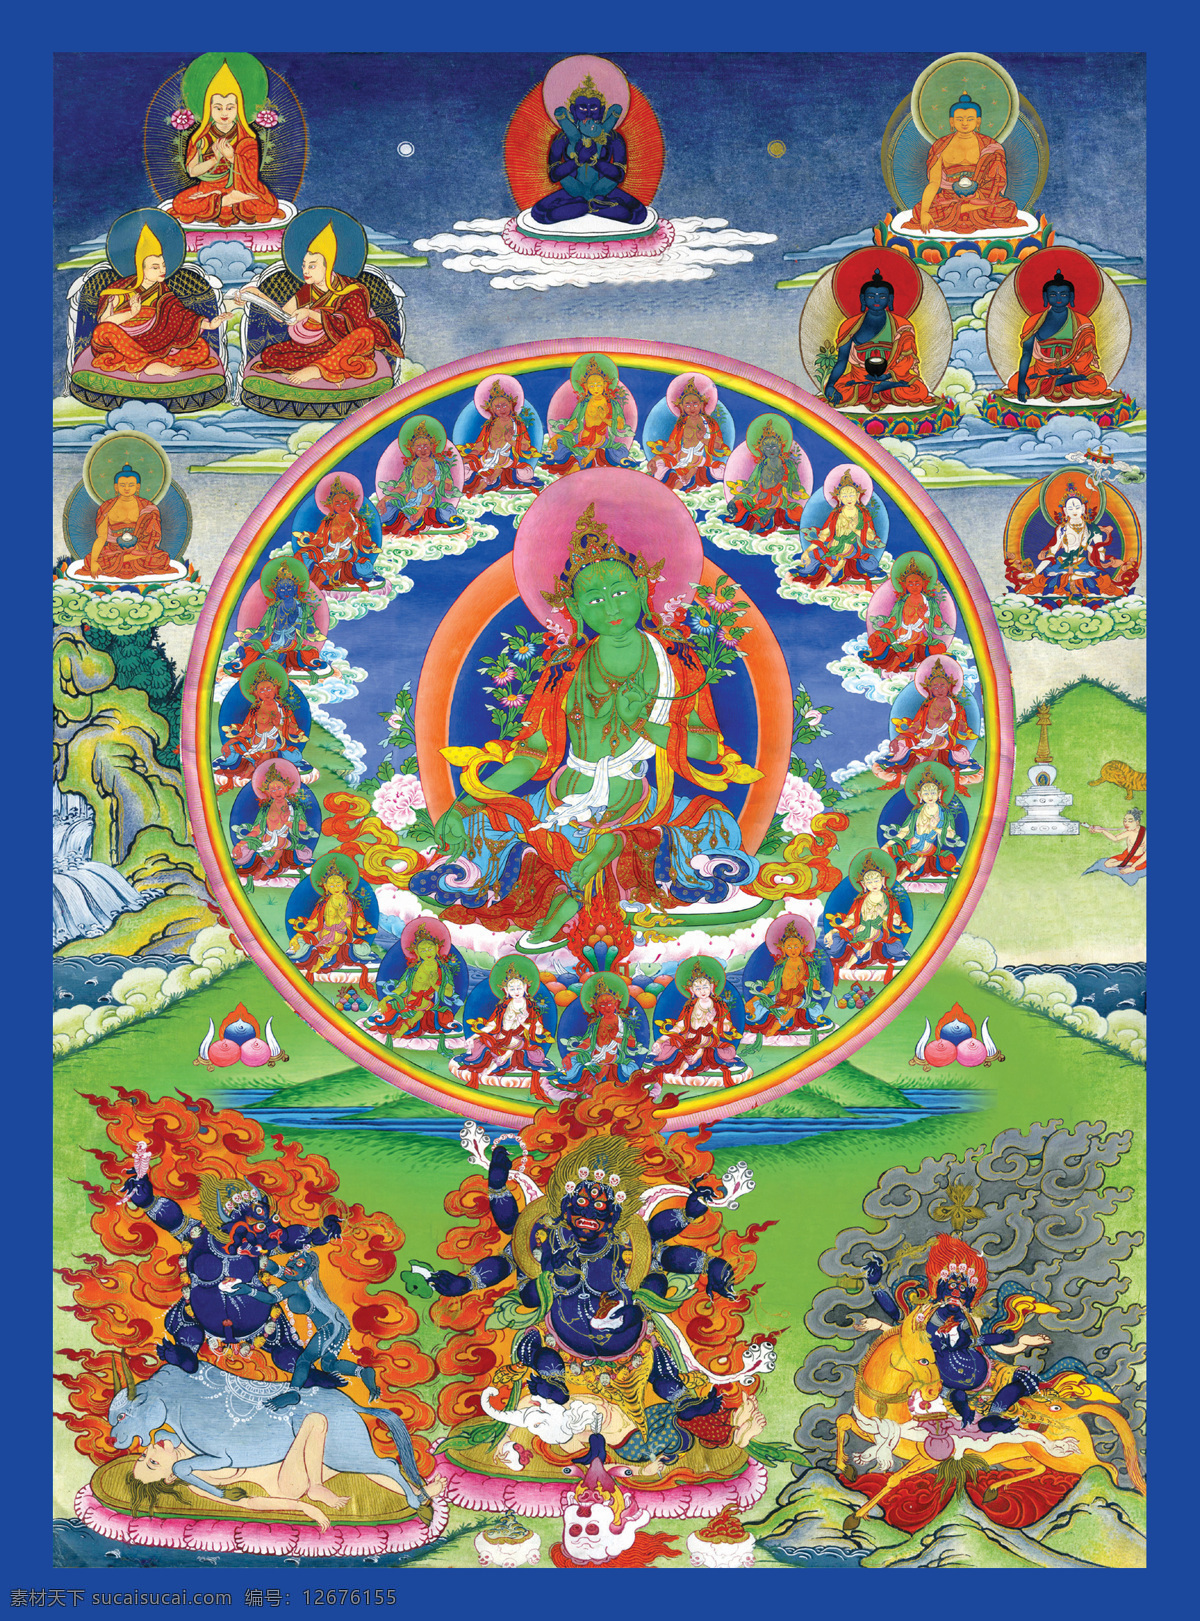 二十一度母 二十一 度母 佛母 菩萨 救难 救苦 慈悲 佛 佛教 西藏 密宗 卓玛聂久 女神 女性本尊 宗教信仰 文化艺术